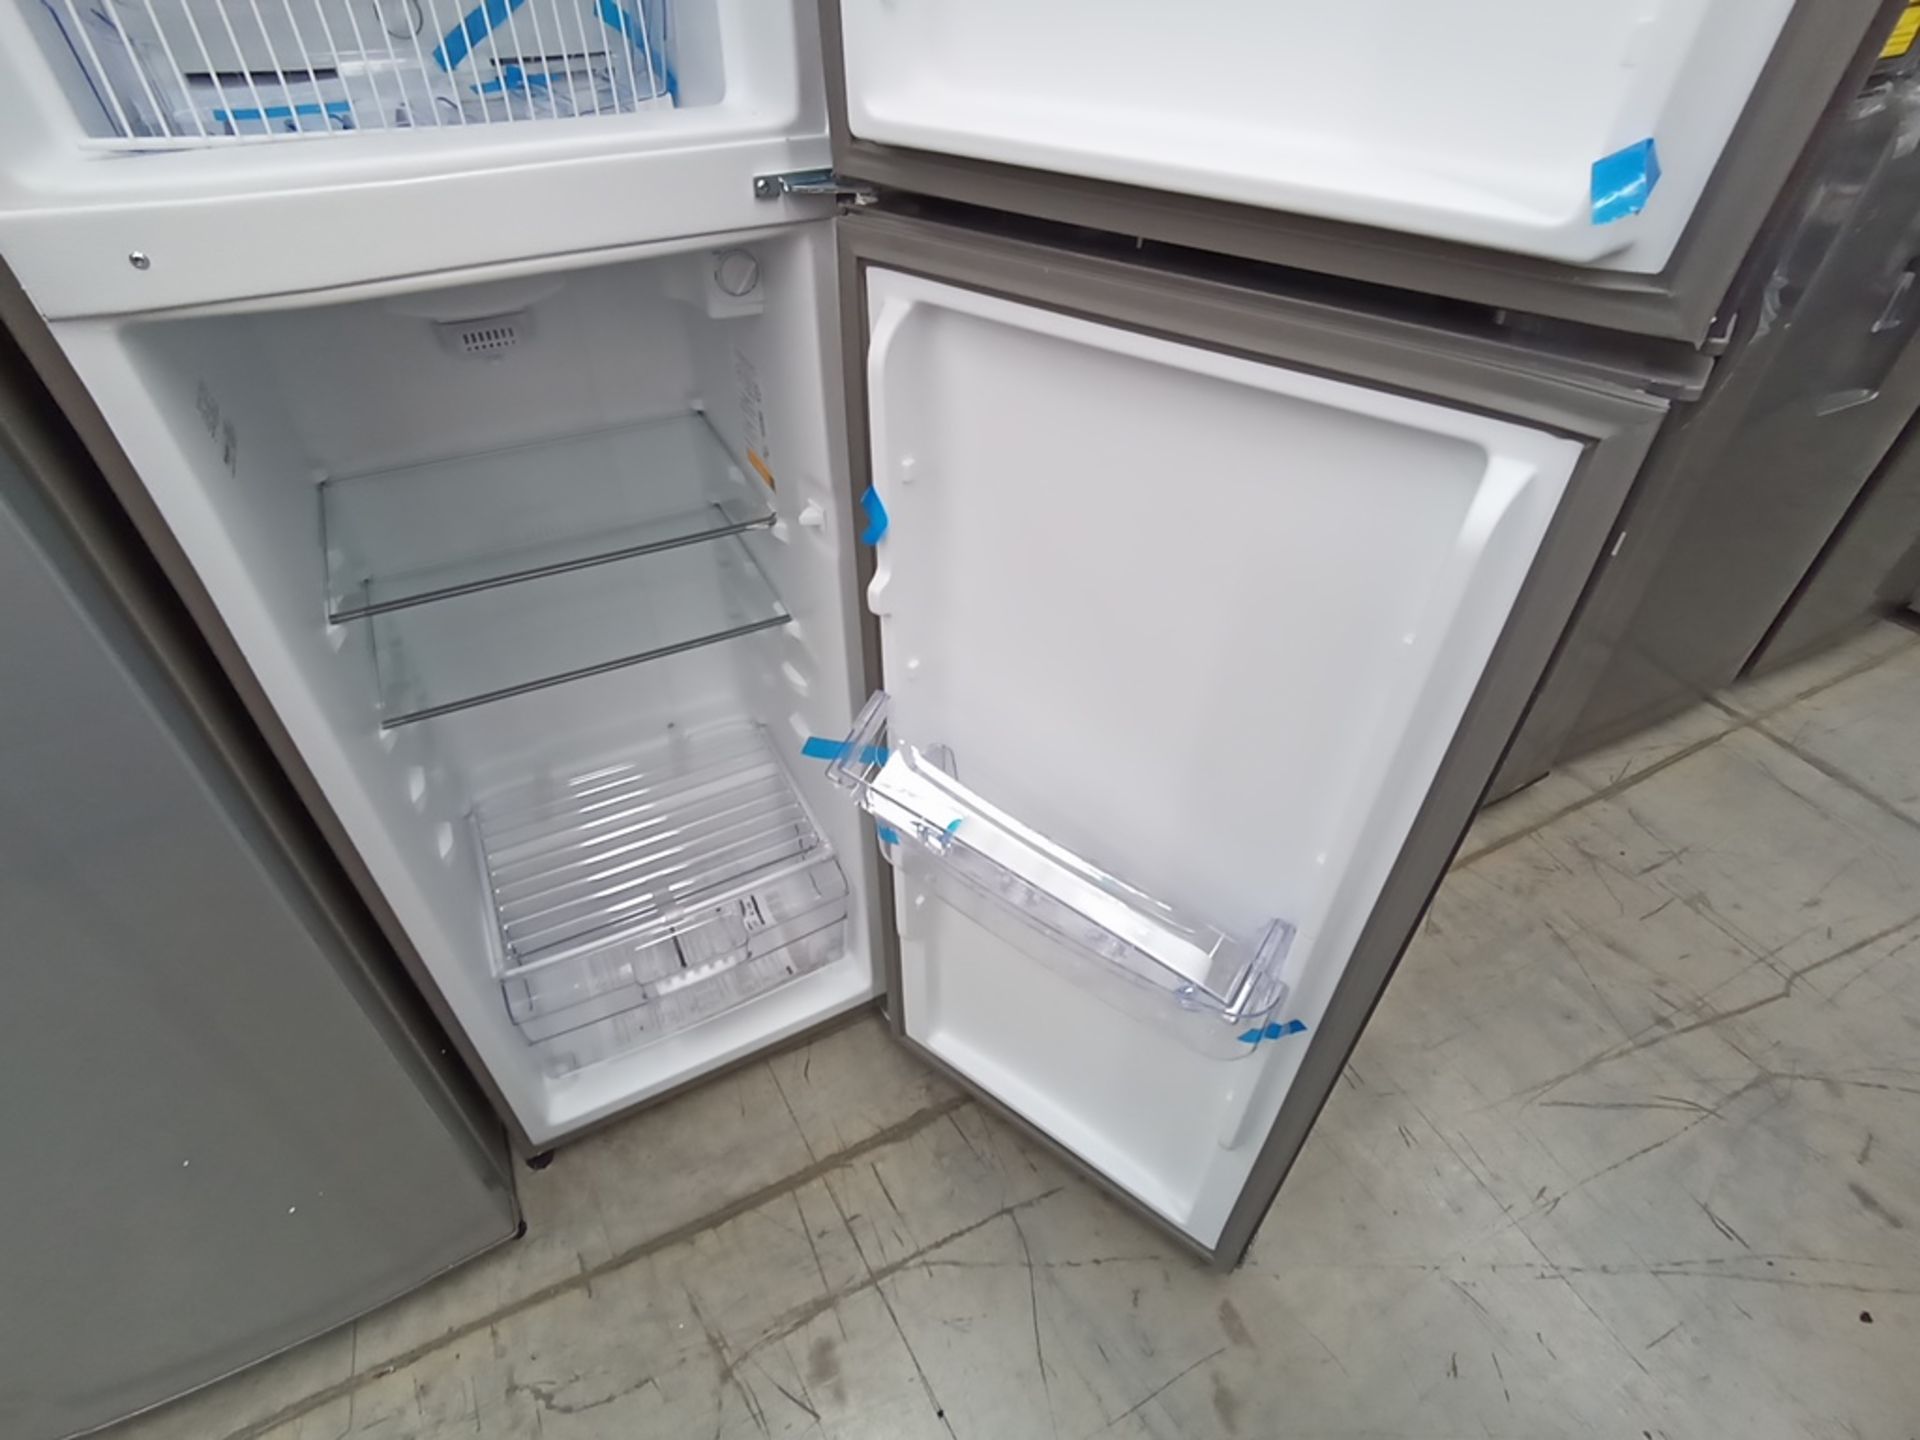 1 Refrigerador Marca Acros, Modelo AT091FG, Serie VRA3383587, Color Gris con Estampado. Golpeado. F - Image 11 of 30